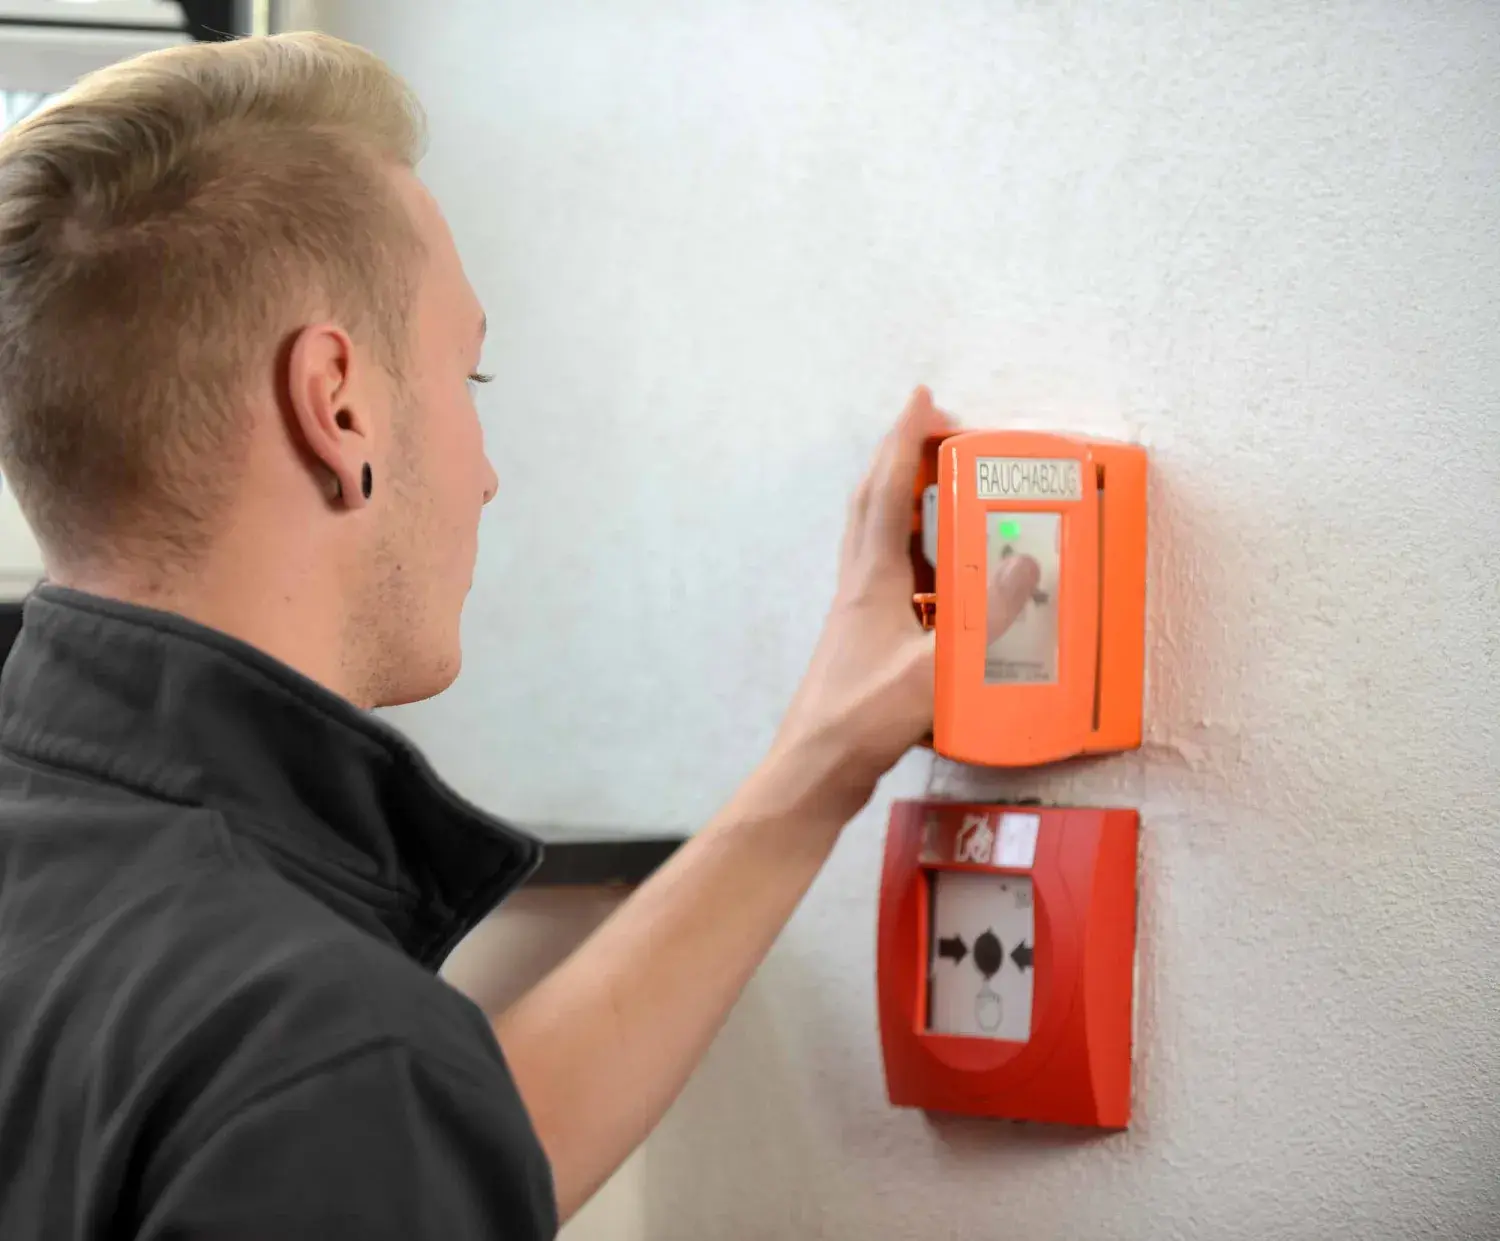 Brandschutztechniker drückt auf den Knopf eines Handtasters einer RWA-Anlage